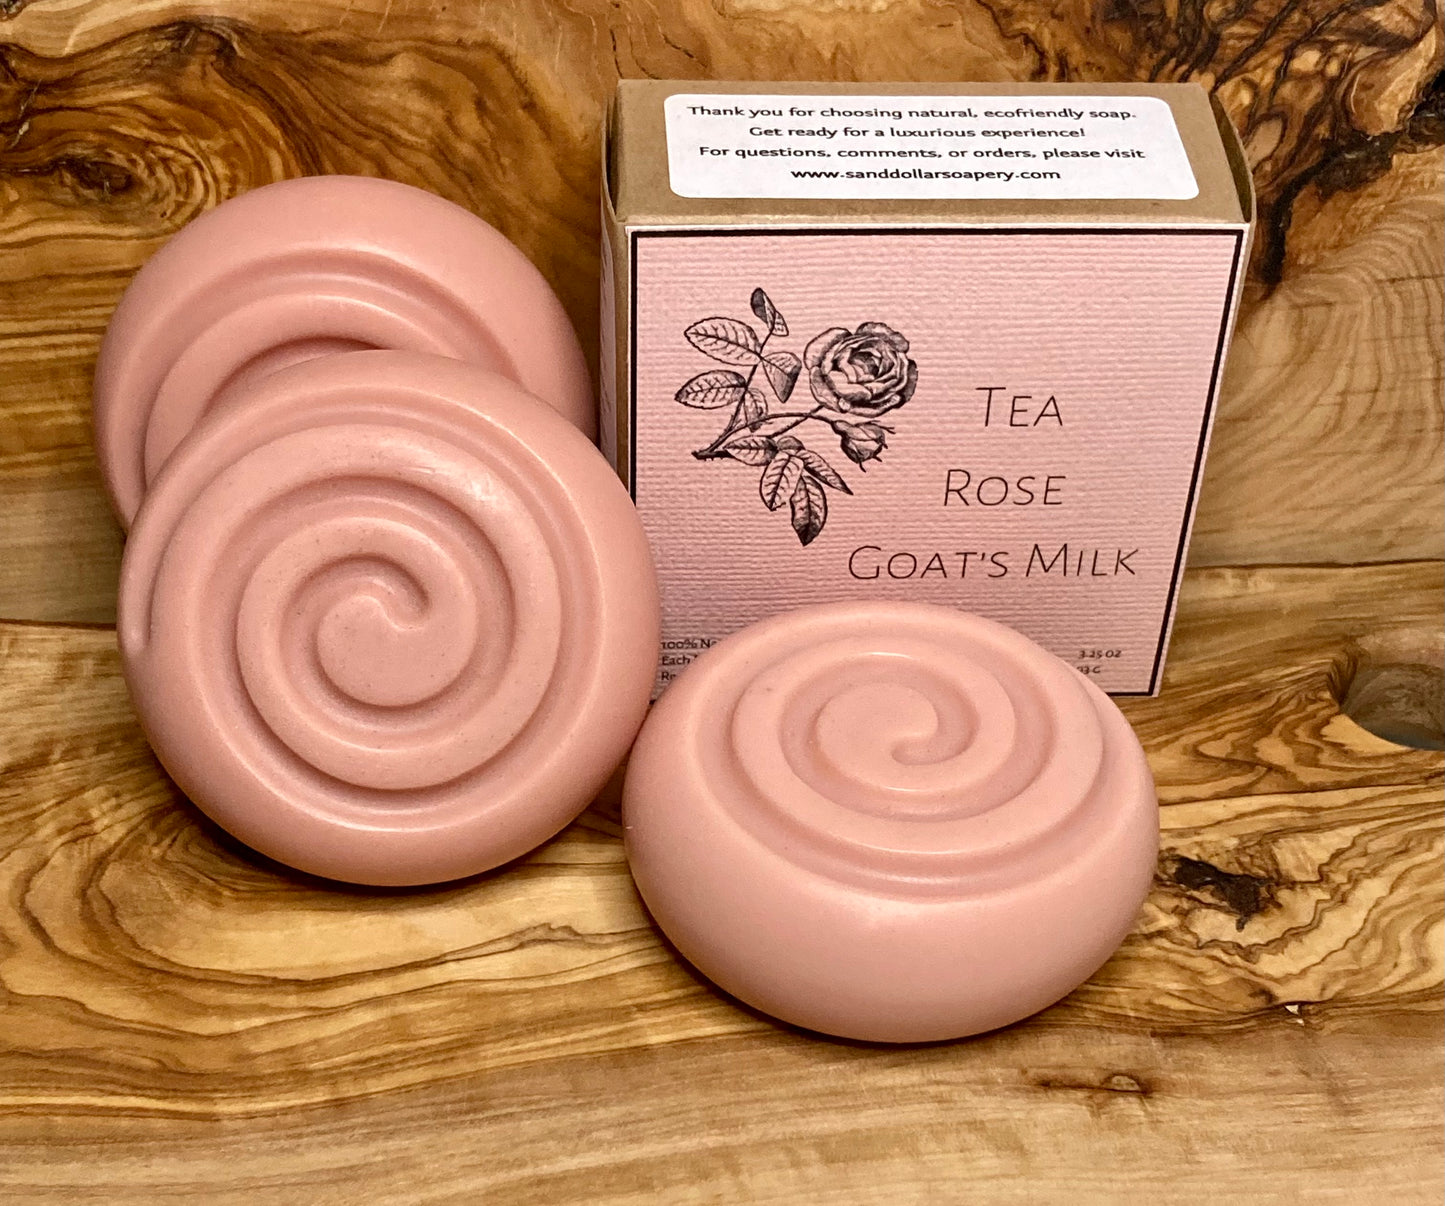 Tea Rose Goat's Milk